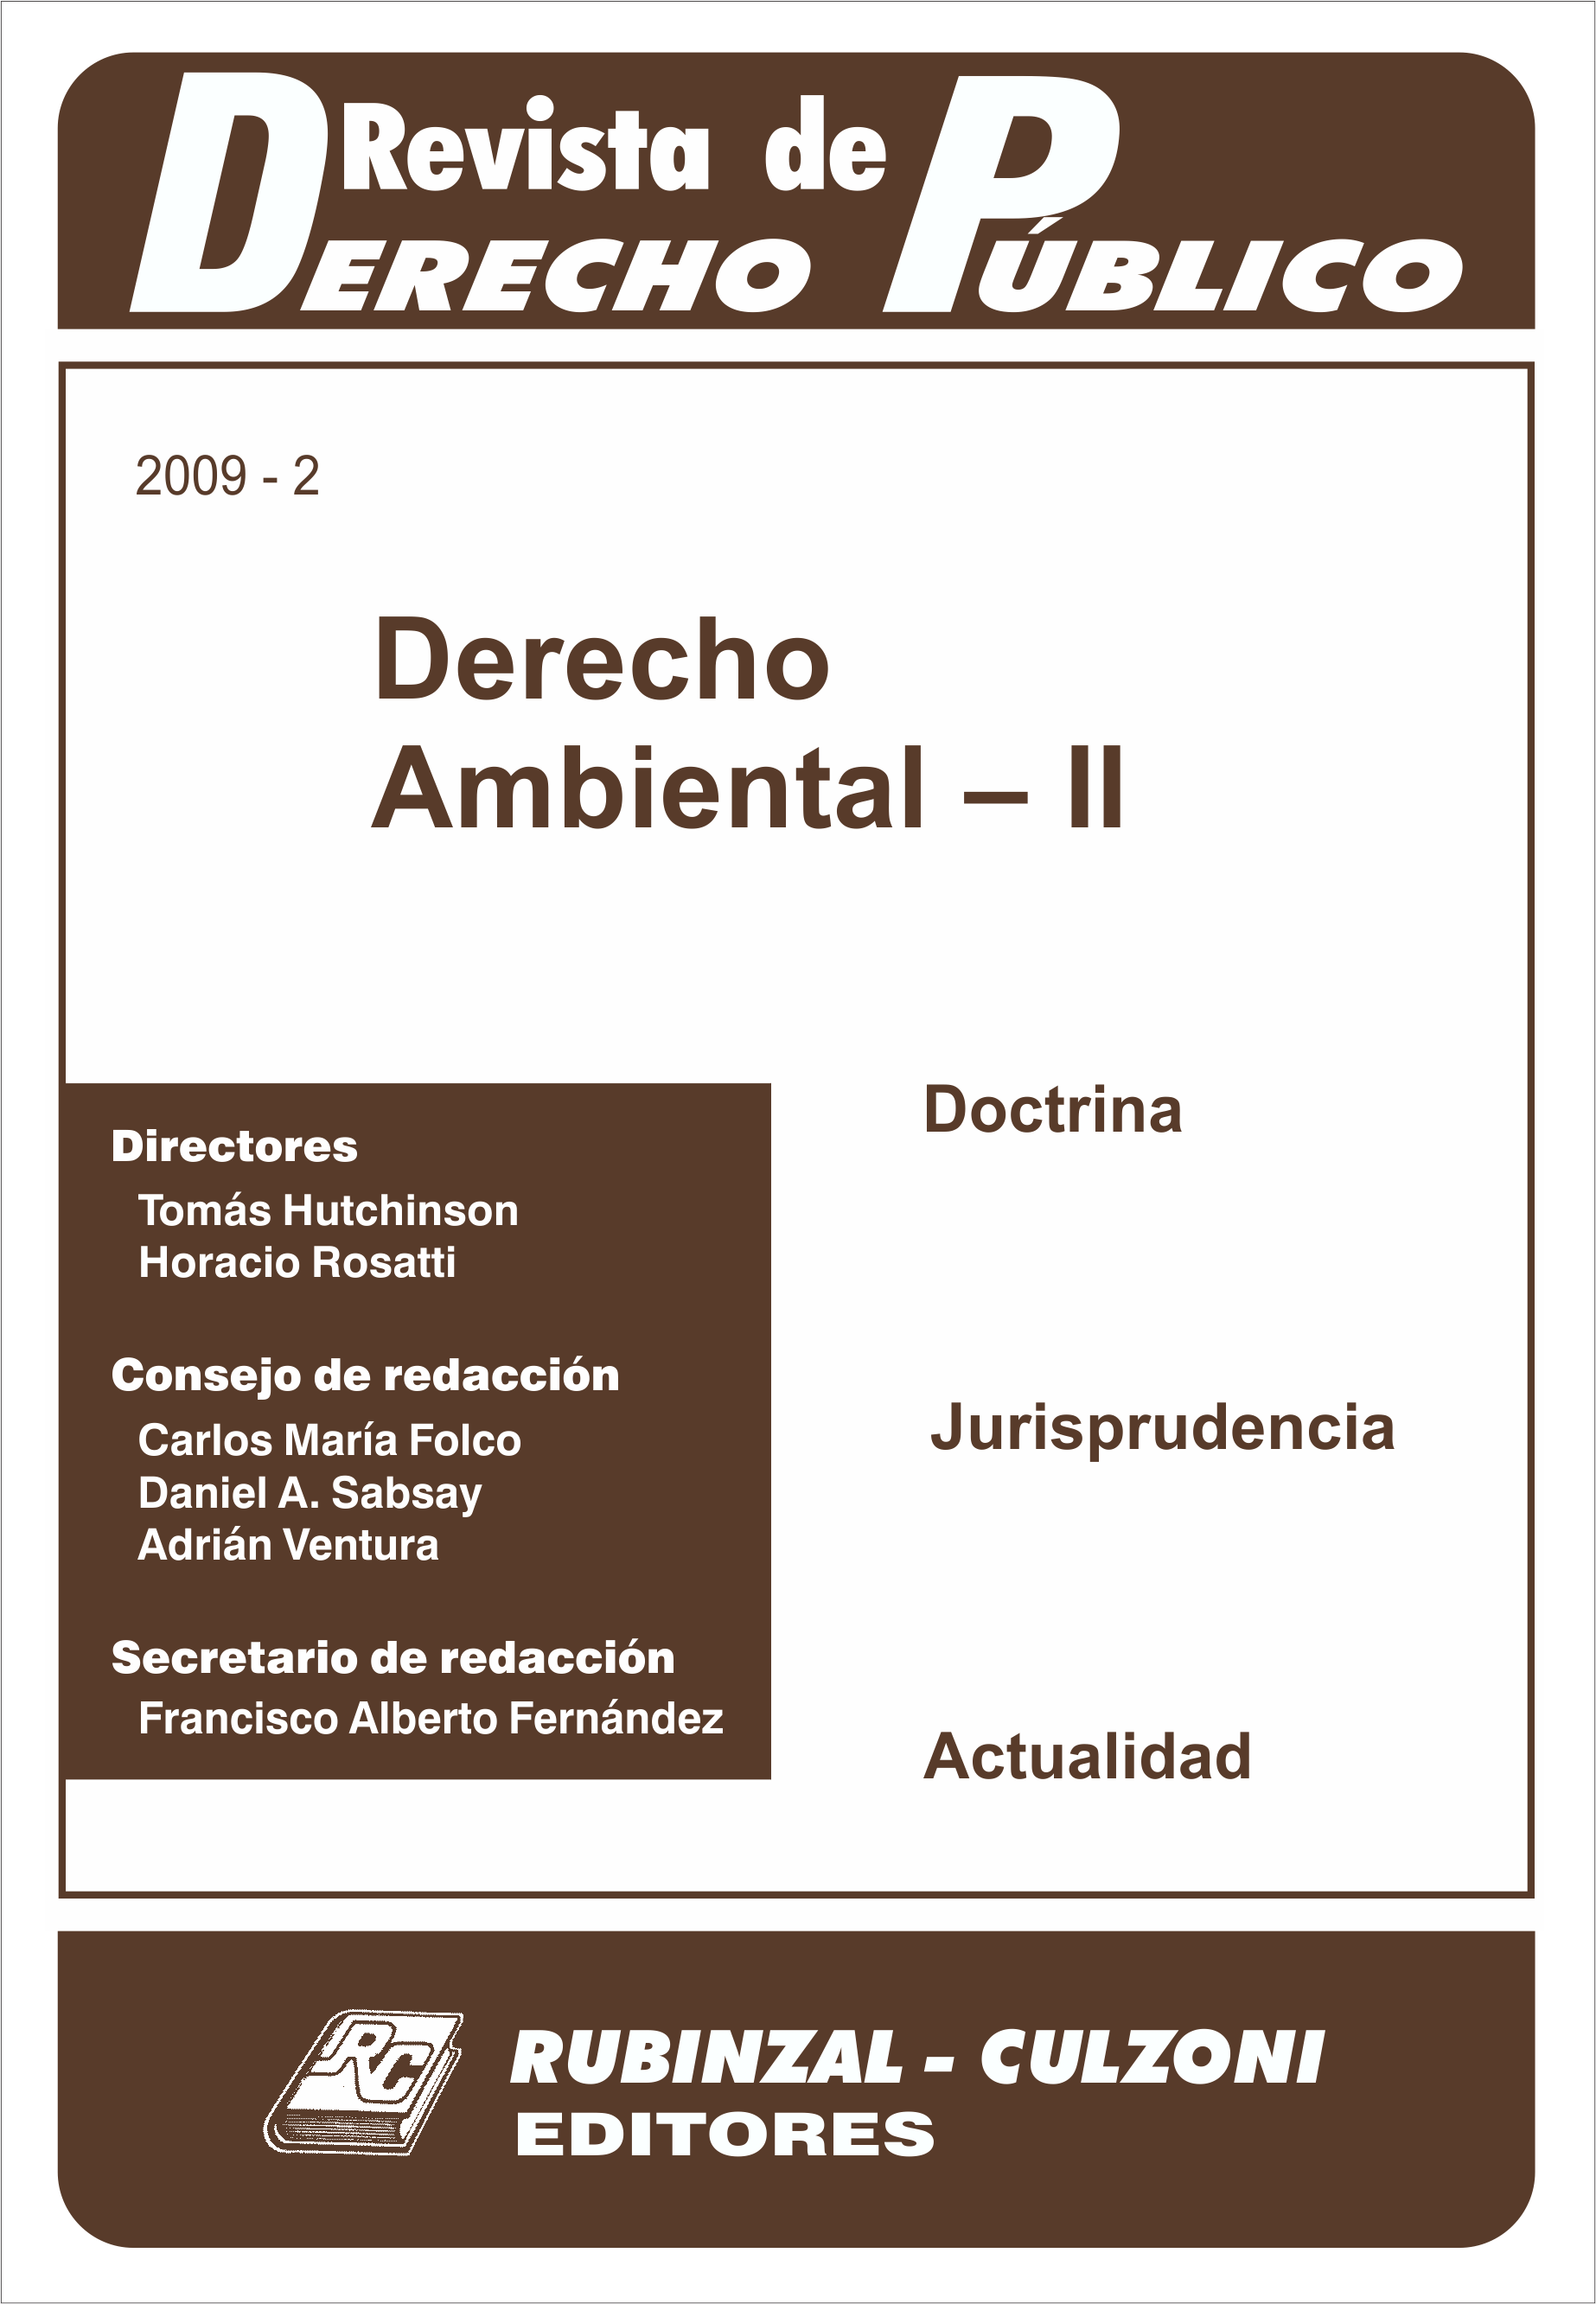 Revista de Derecho Público - Derecho Ambiental - II.